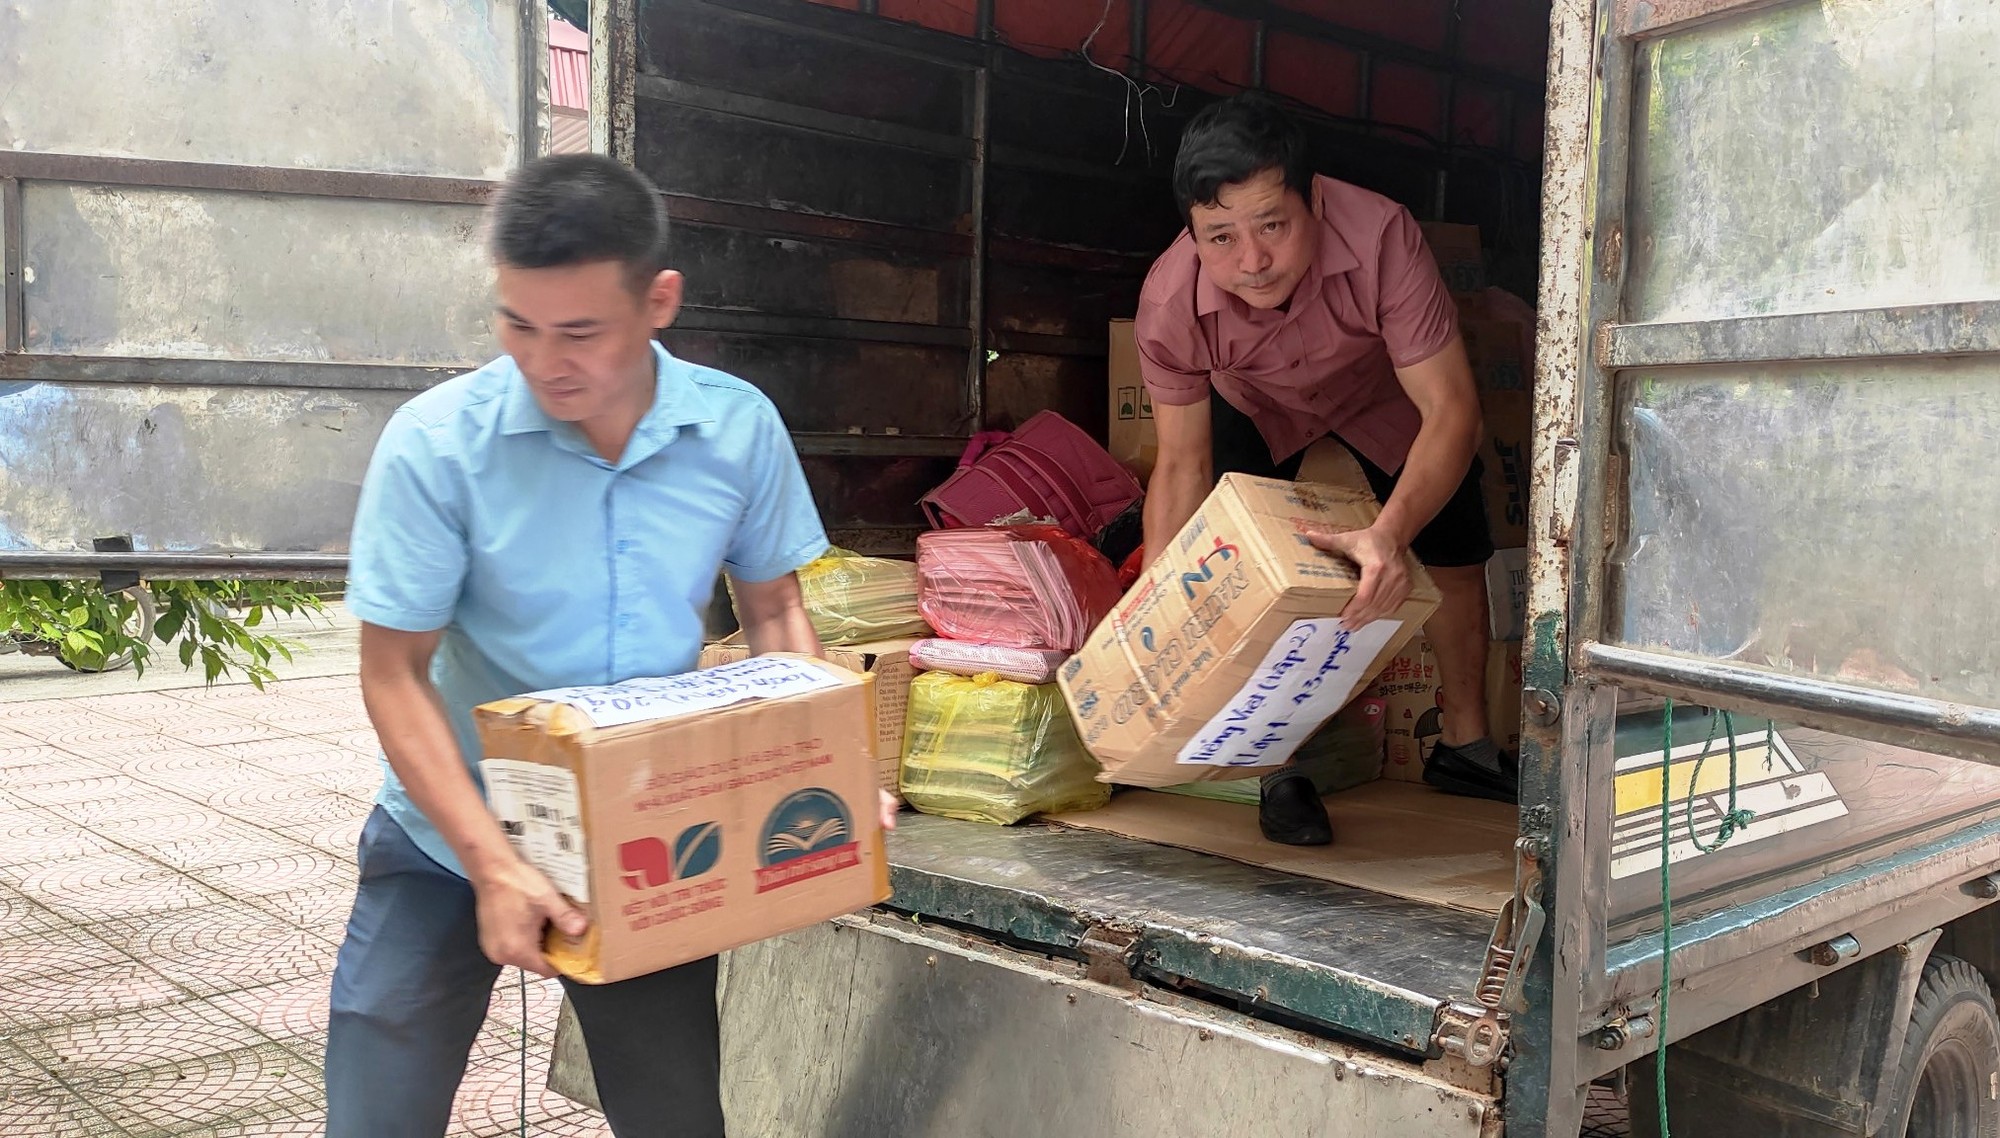 Hàng ngàn cuốn sách giáo khoa vượt sông đến với trò nghèo vùng biên Thanh Hóa ảnh 3